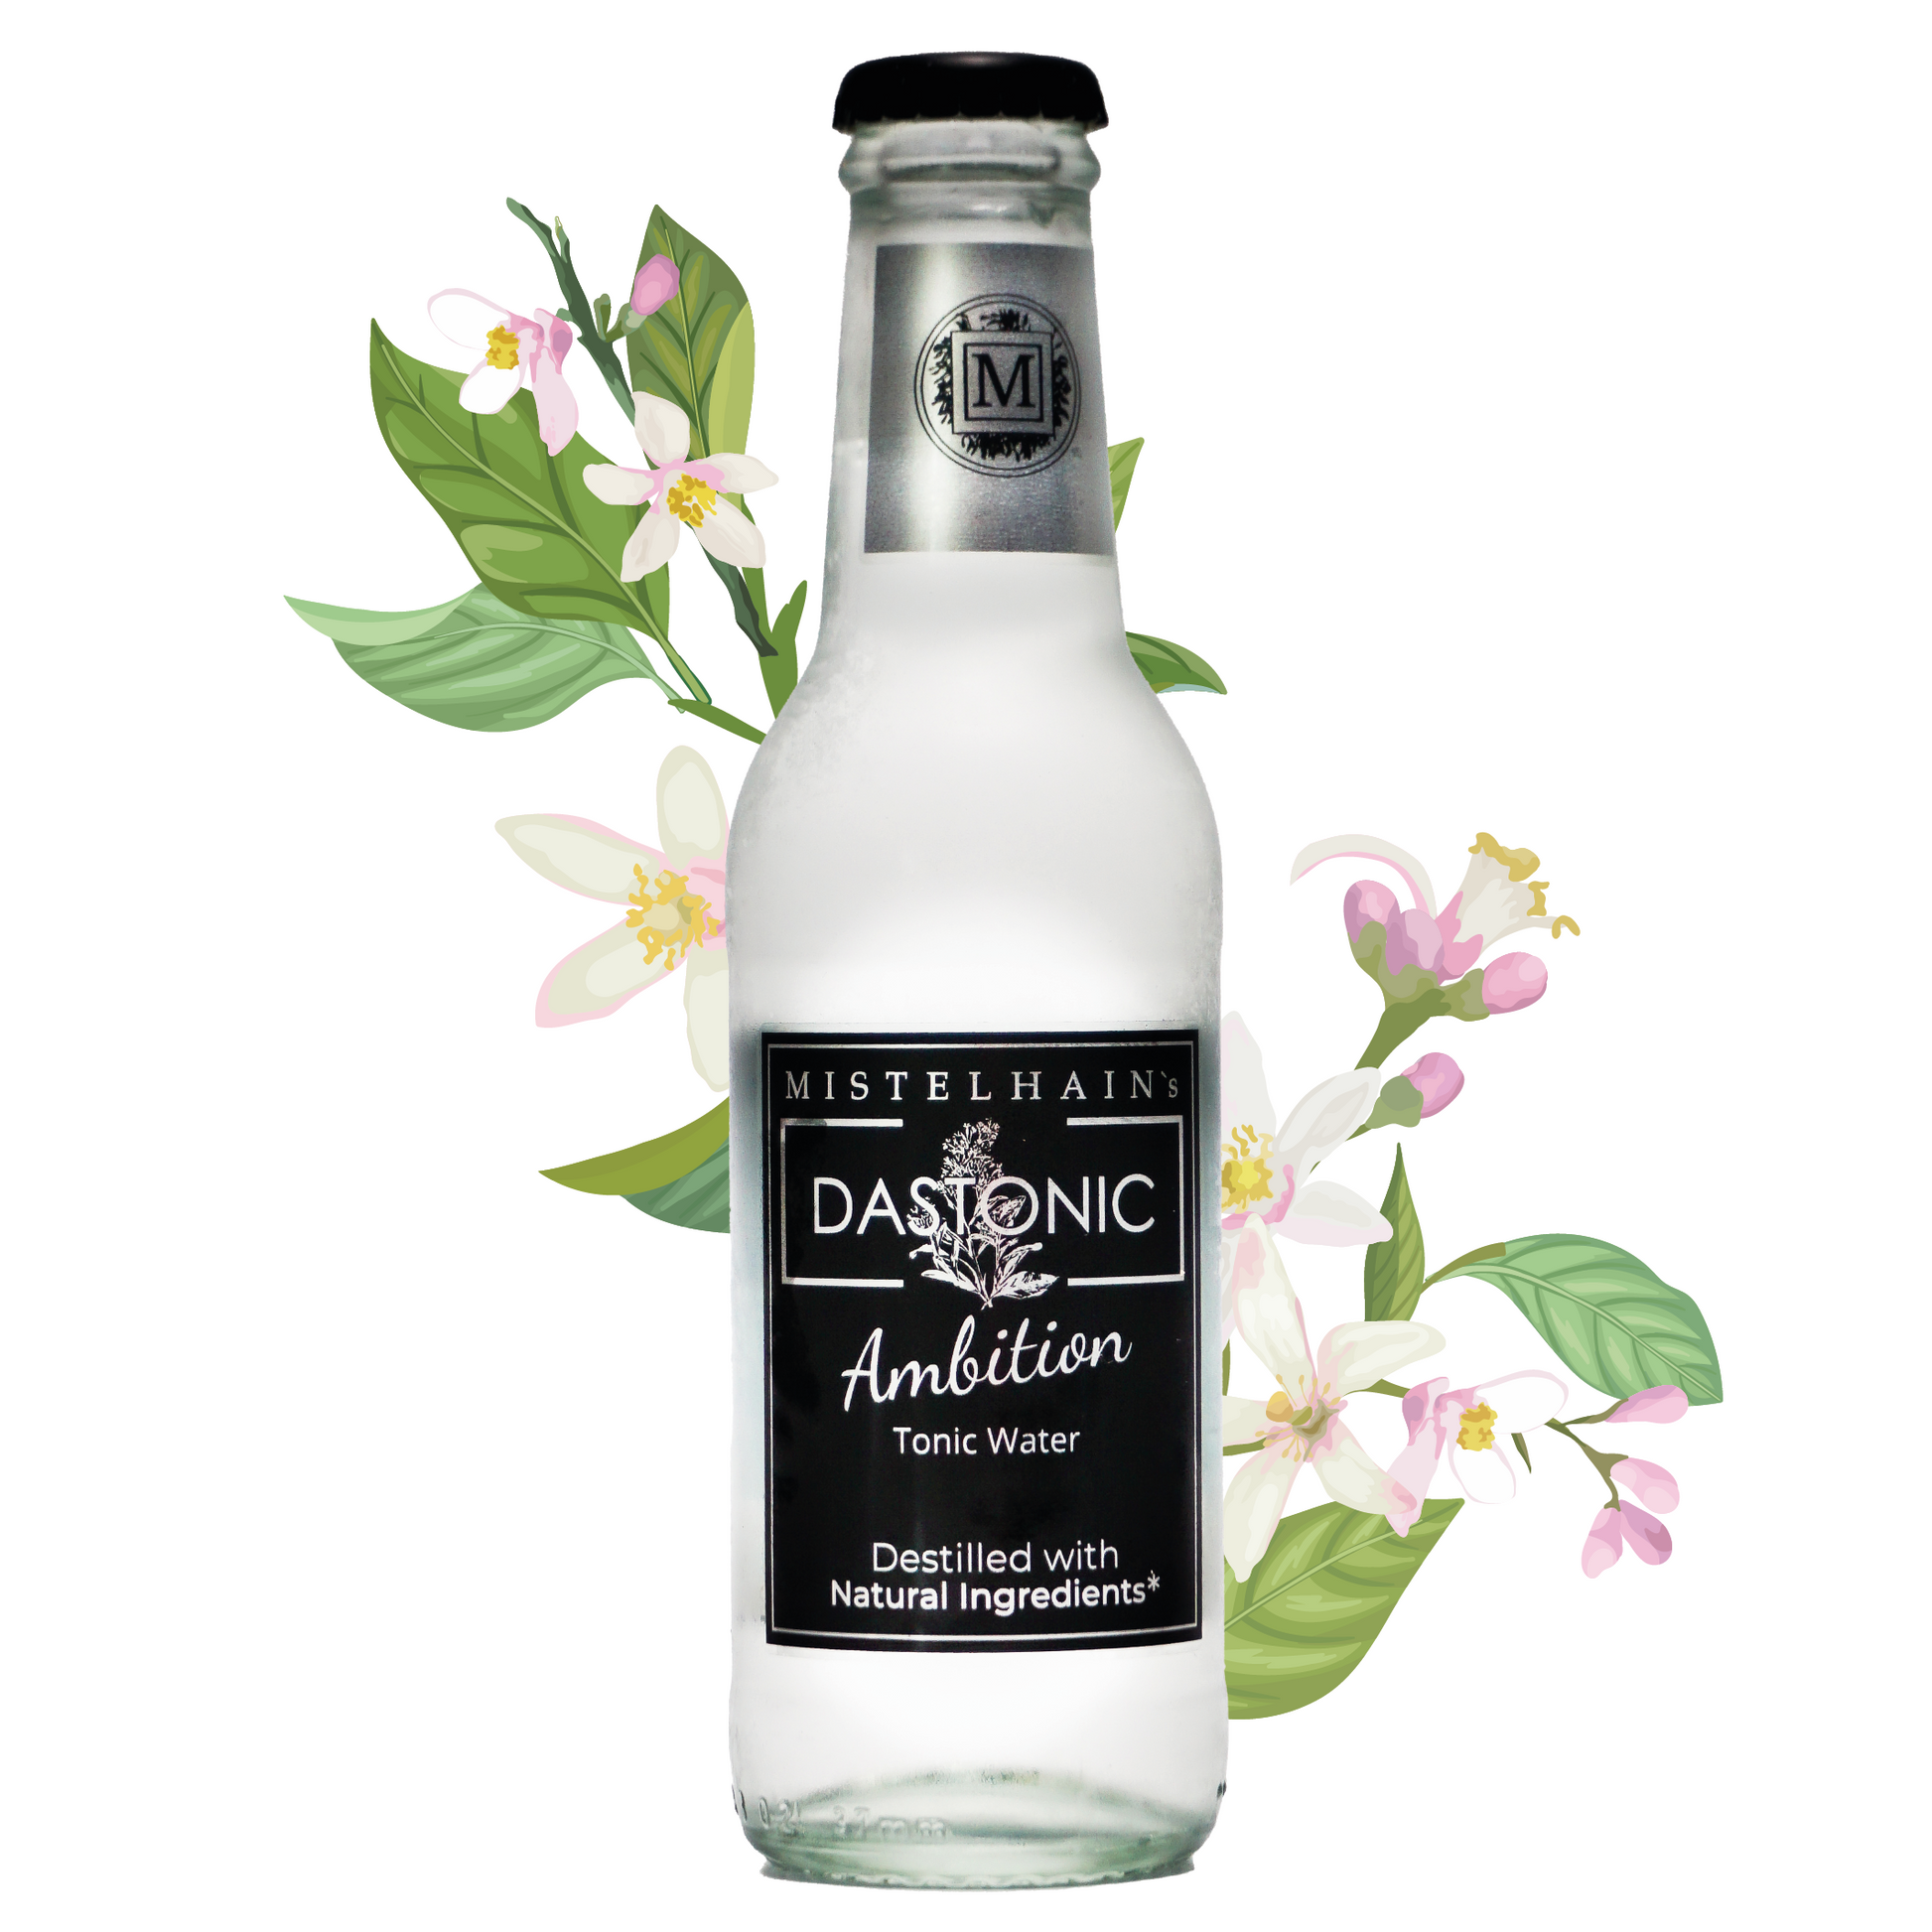 Tonic Water DASTONIC Ambition von Mistelhain in einer 200 ml Glasflasche mit schwarzen Etikett und Kronenkorken. Im Hintergrund sind Zitrus Blumen zu sehen.